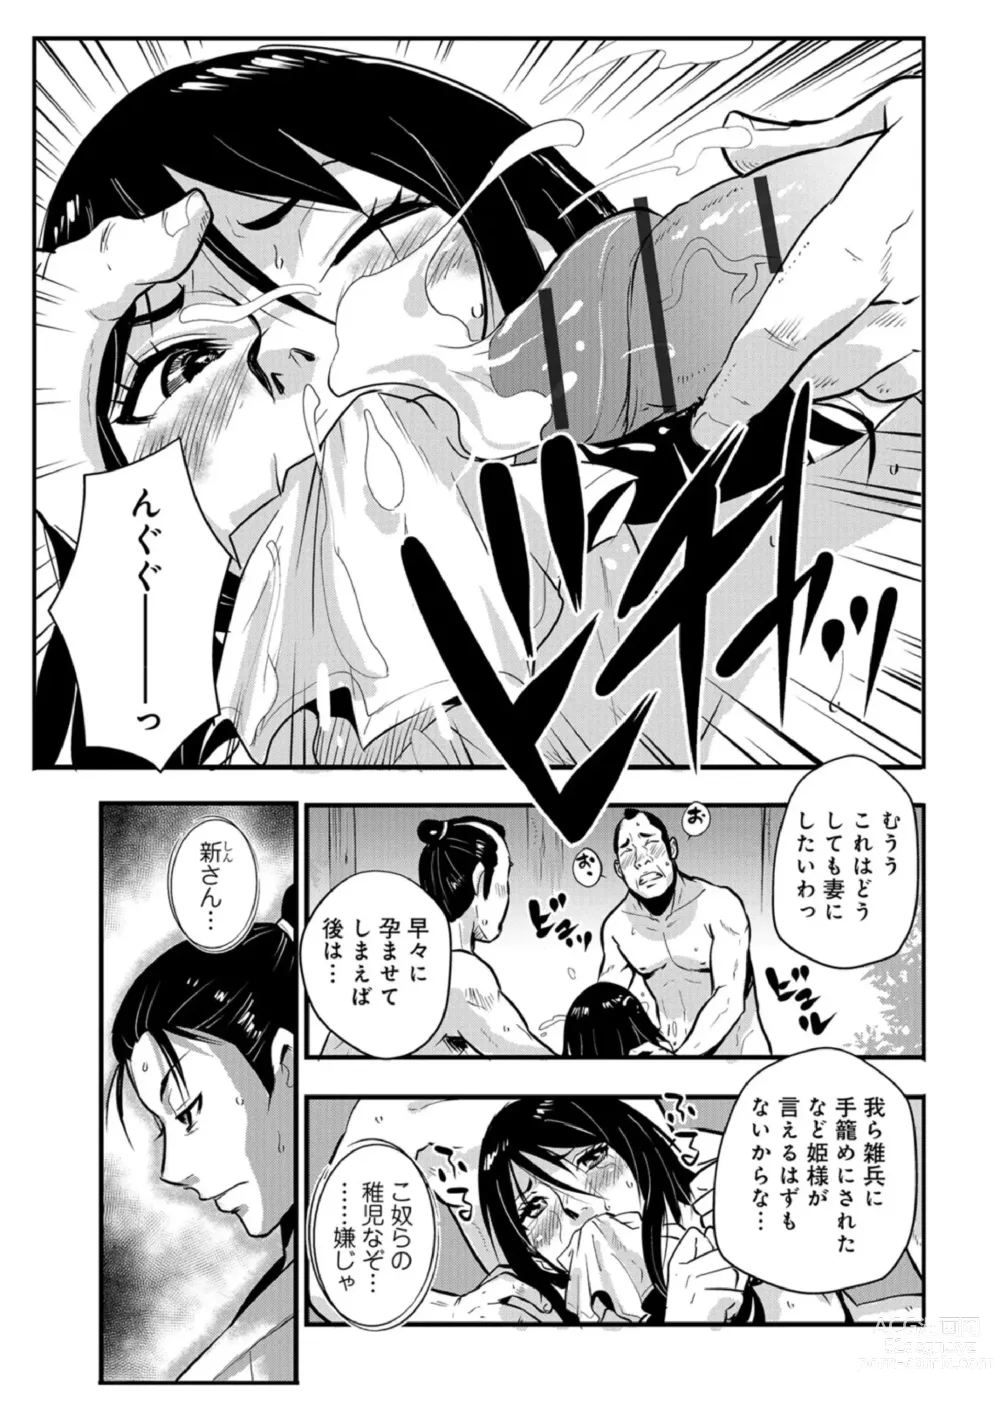 Page 9 of manga Harami samurai 07 ~Munen to Ryoujoku no Yabu no Naka~